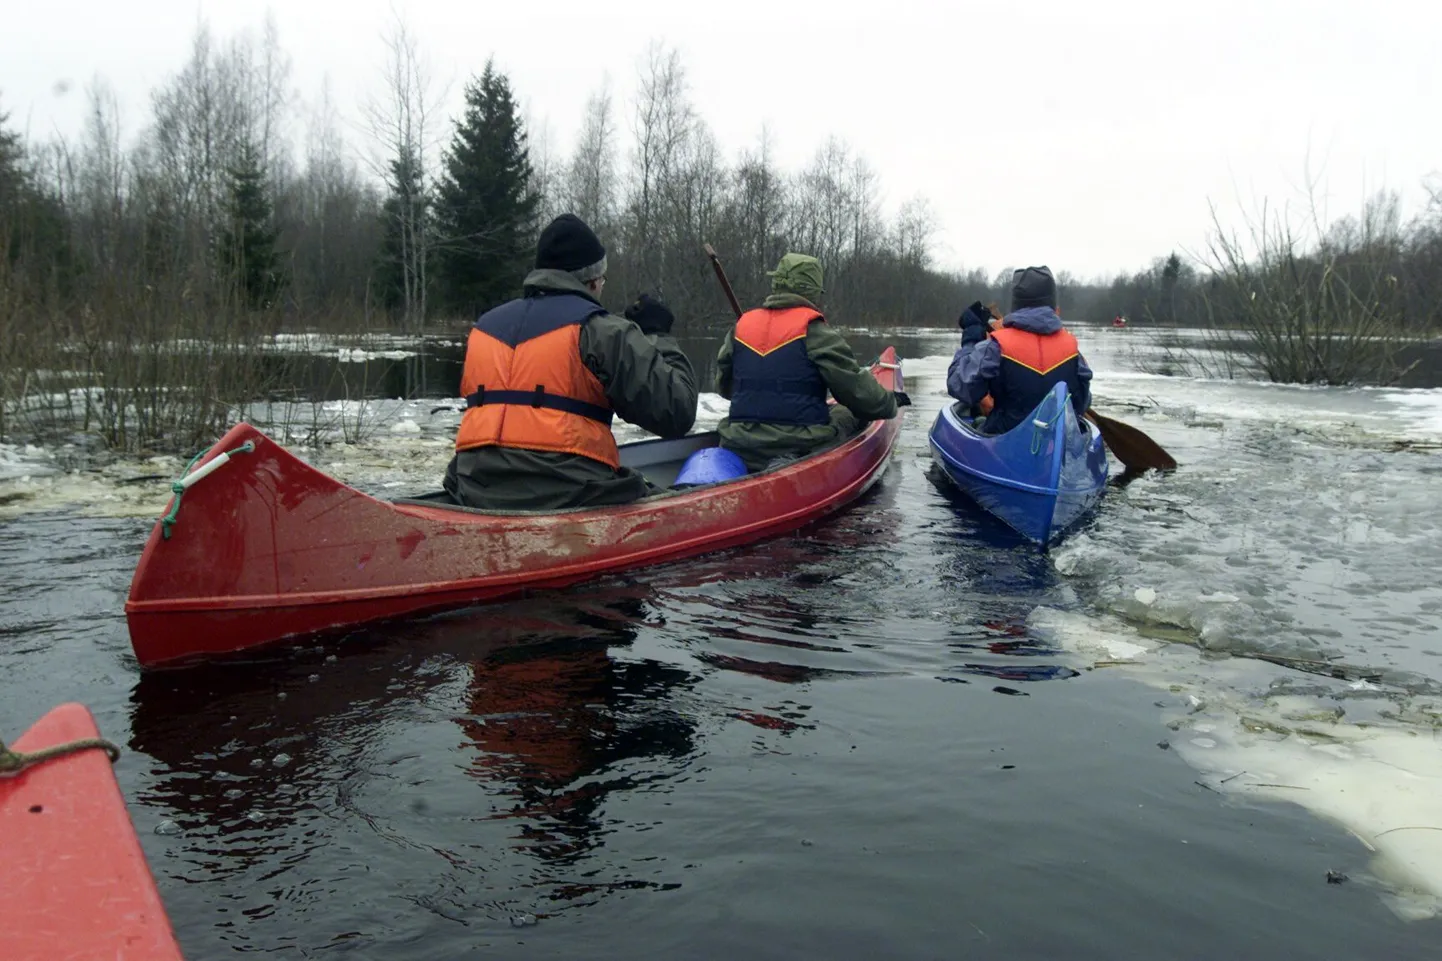 Esimene rahvarohke külma tulvavee aegne kanuumatk korraldati Soomaal 2004. aasta märtsis kevadise kõrgvee aegu (pildil), tänavu algas hooaeg juba detsembris.